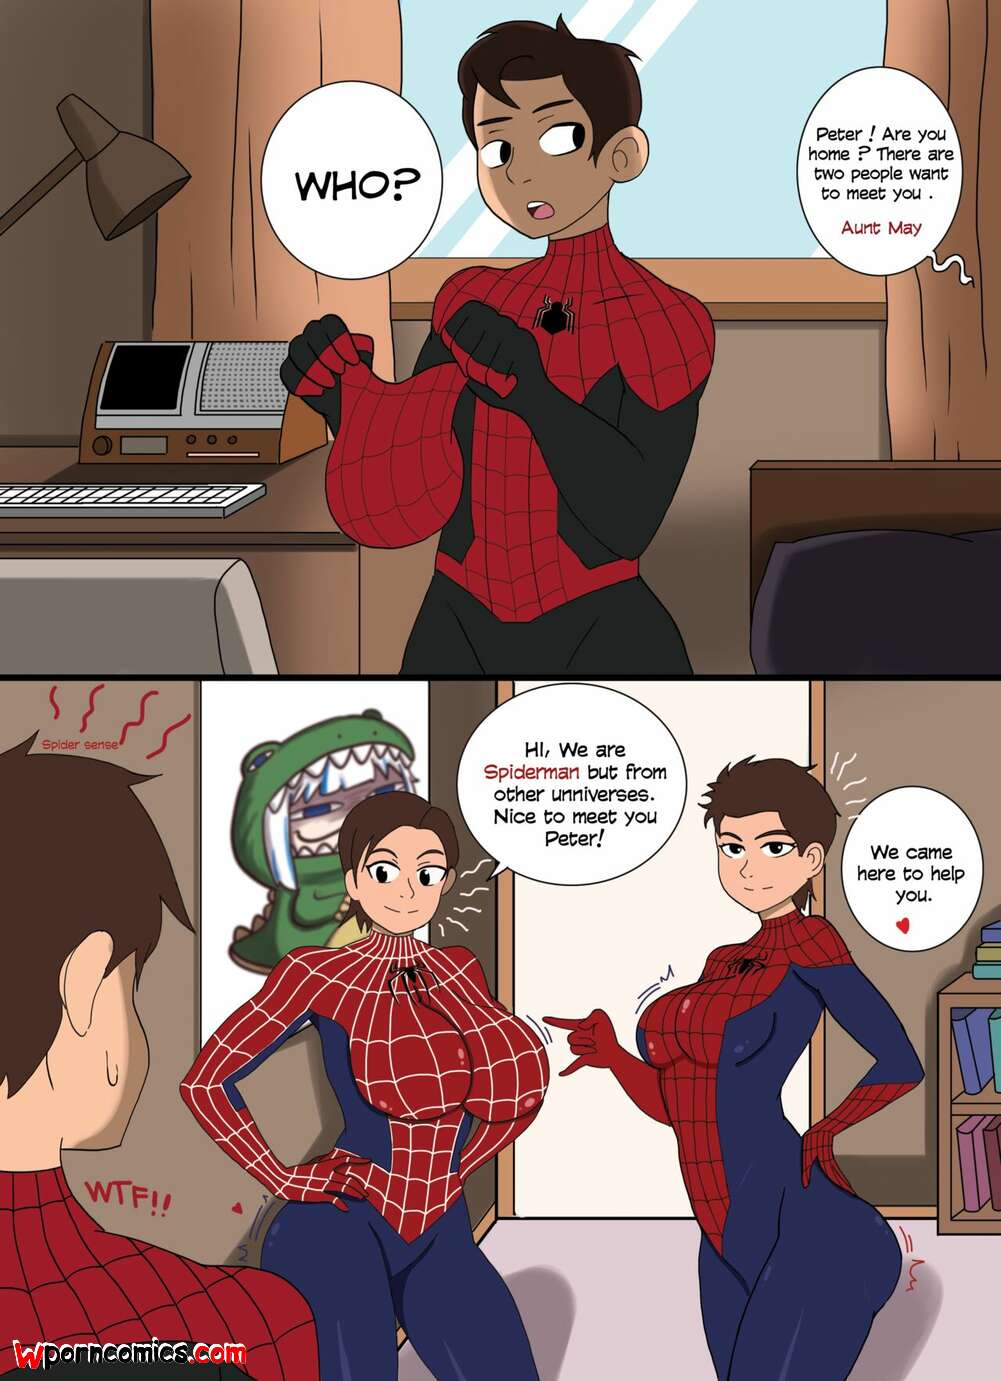 Spiderman porno